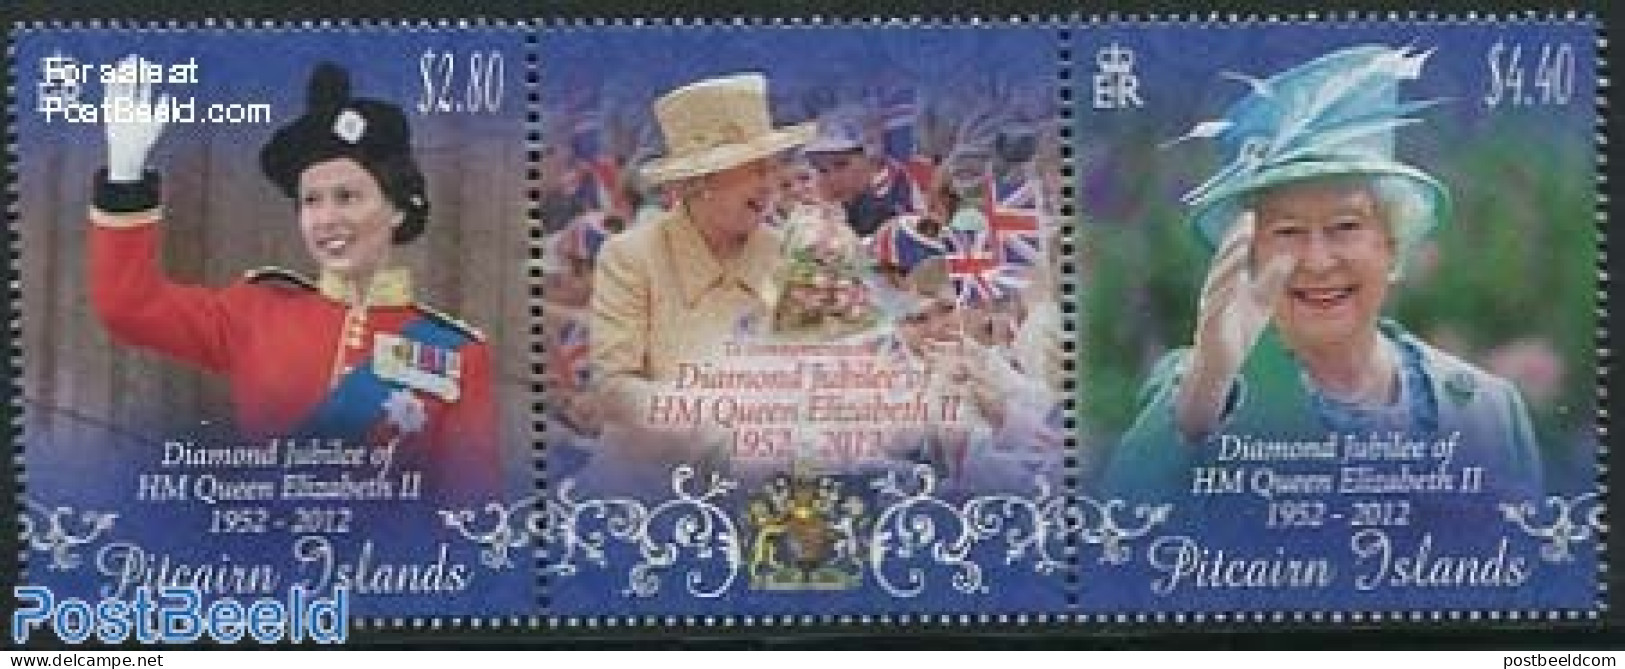 Pitcairn Islands 2012 Elizabeth II Diamond Jubilee 3v [::], Mint NH, History - Kings & Queens (Royalty) - Royalties, Royals